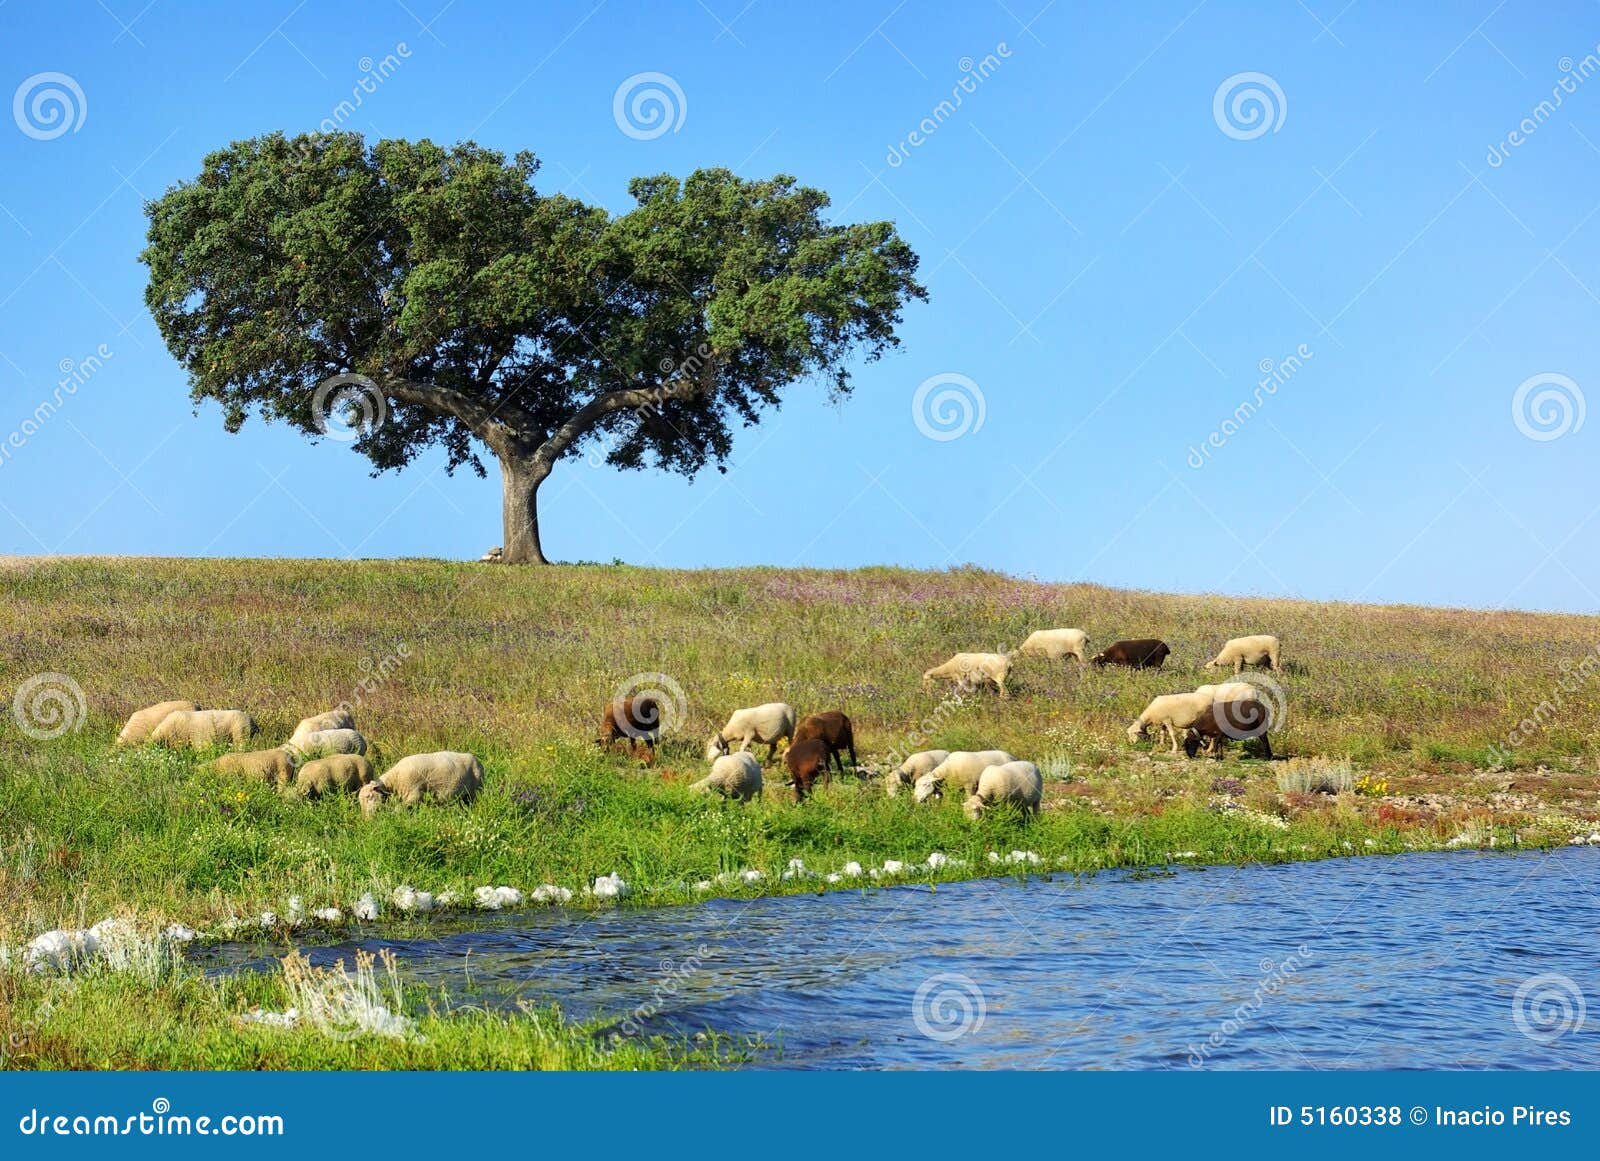 sheep graze.